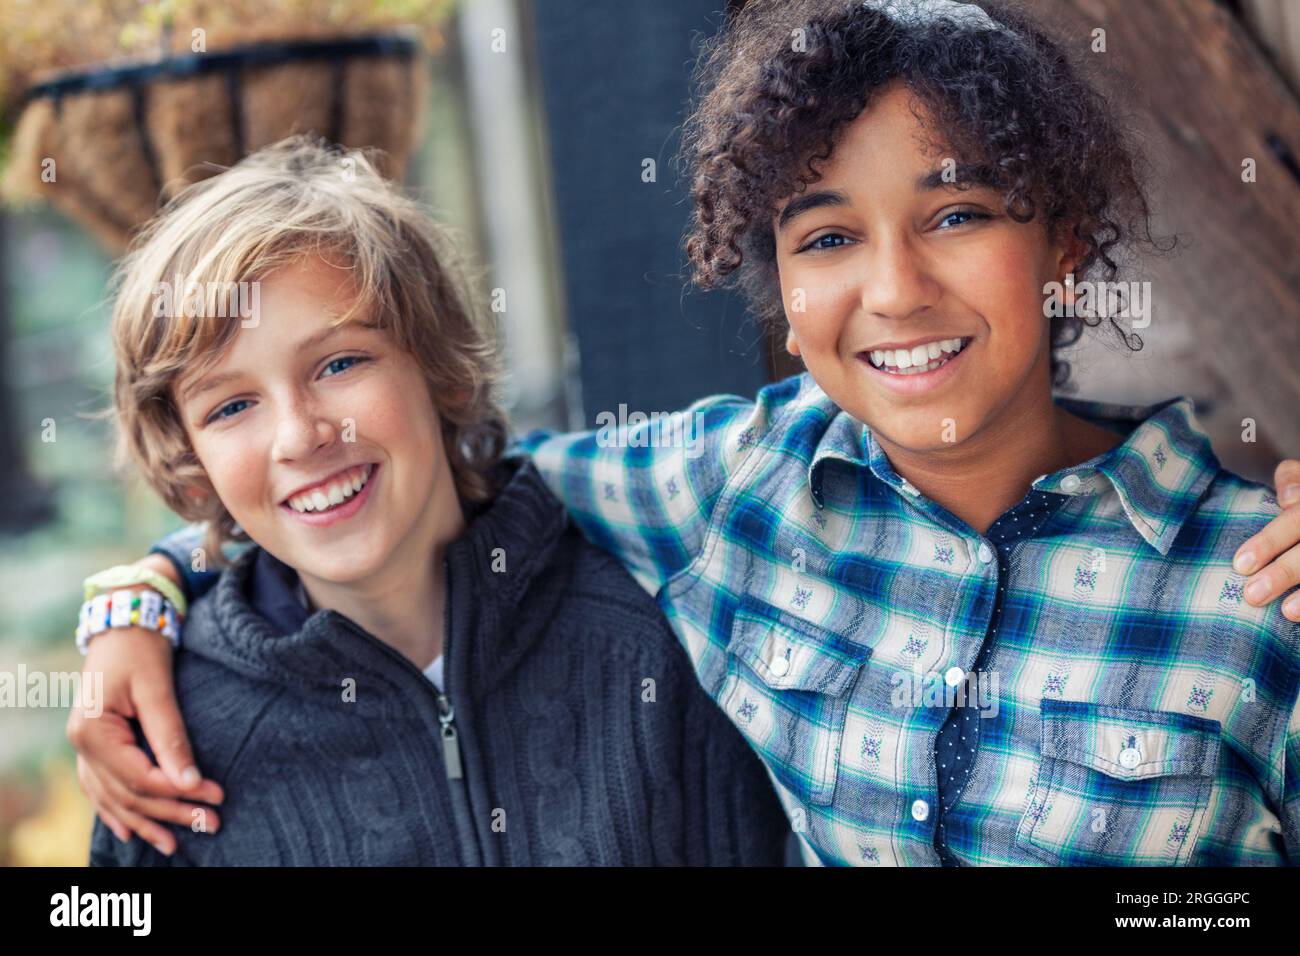 Gruppo etnico misto di due bambini felici, ragazza birazziale afroamericana ragazzo caucasico che ride insieme Foto Stock